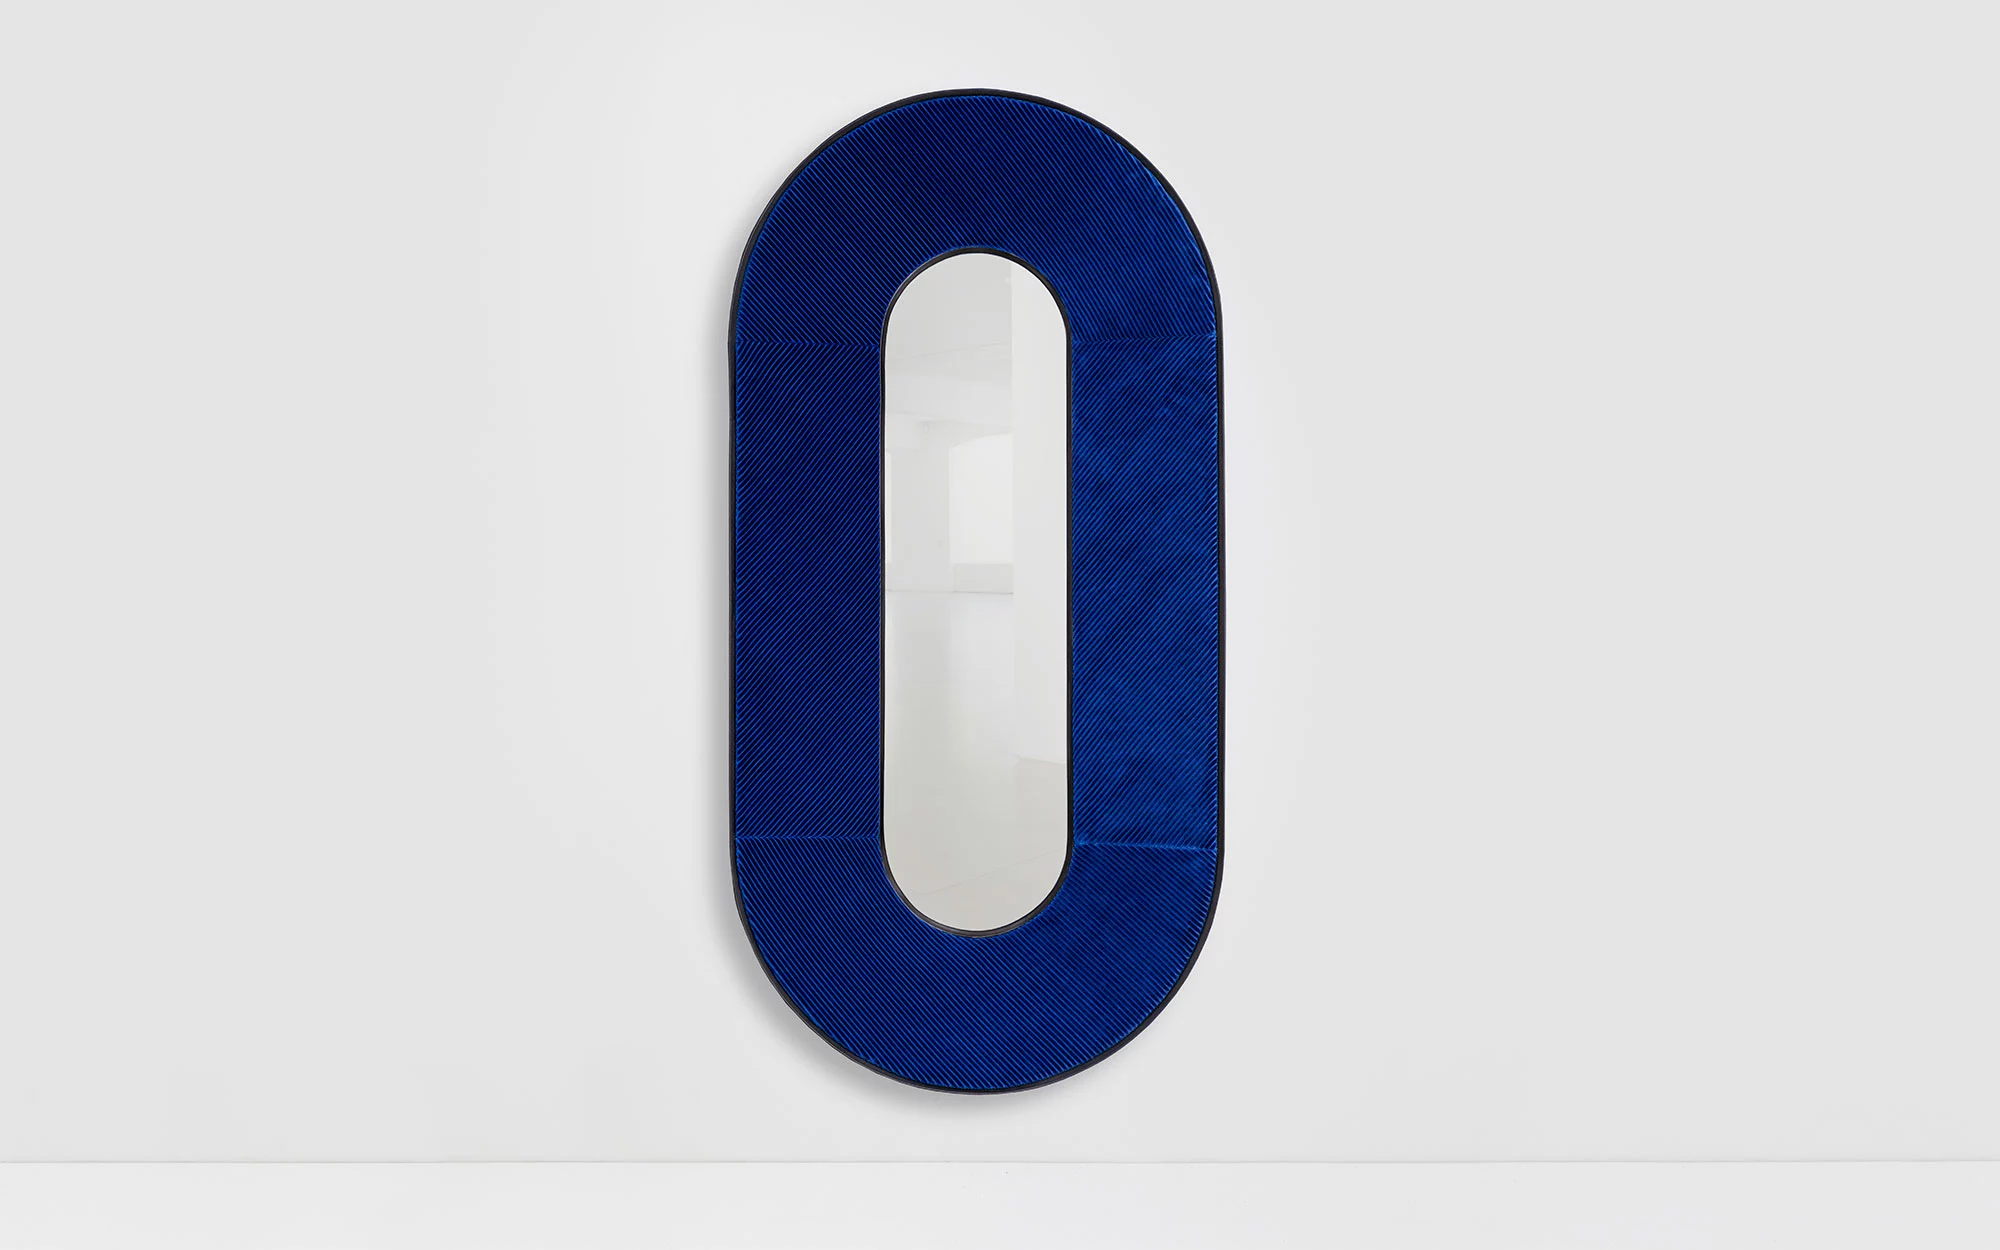 Apollo mirror - Jean-Baptiste Fastrez - Console - Galerie kreo